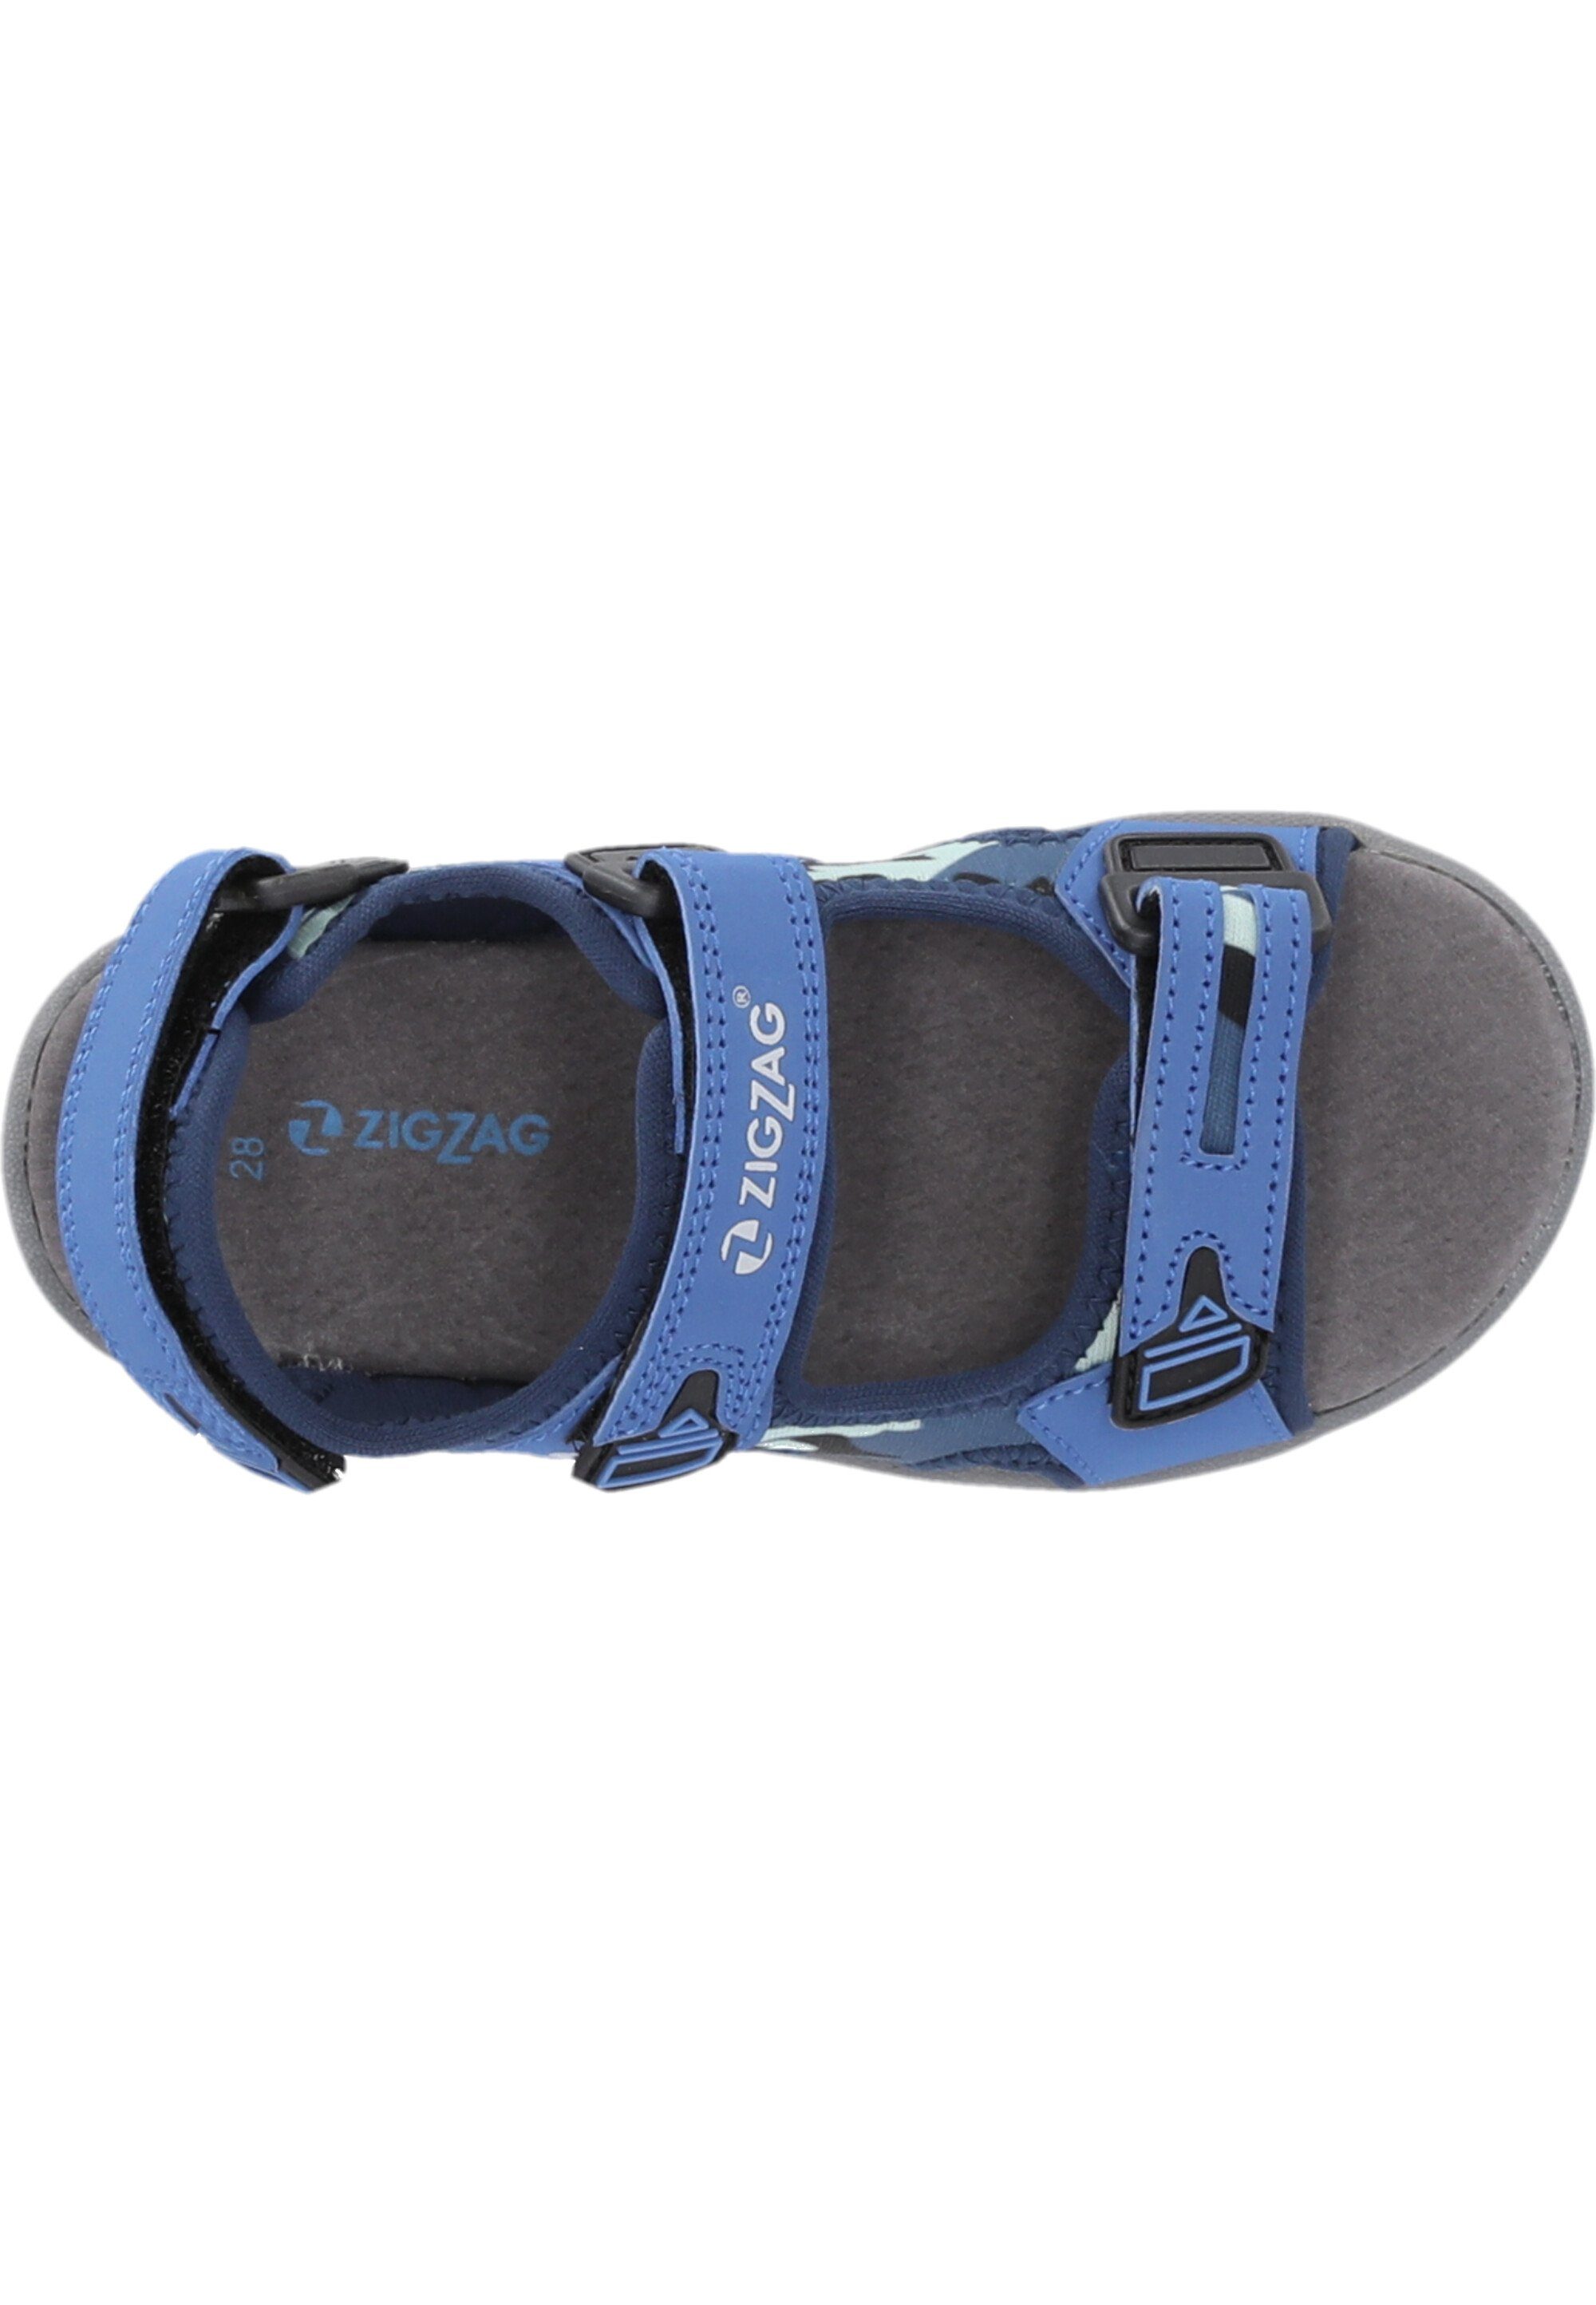 ZIGZAG Tanaka Sandale mit Klettverschluss blau-blau praktischem